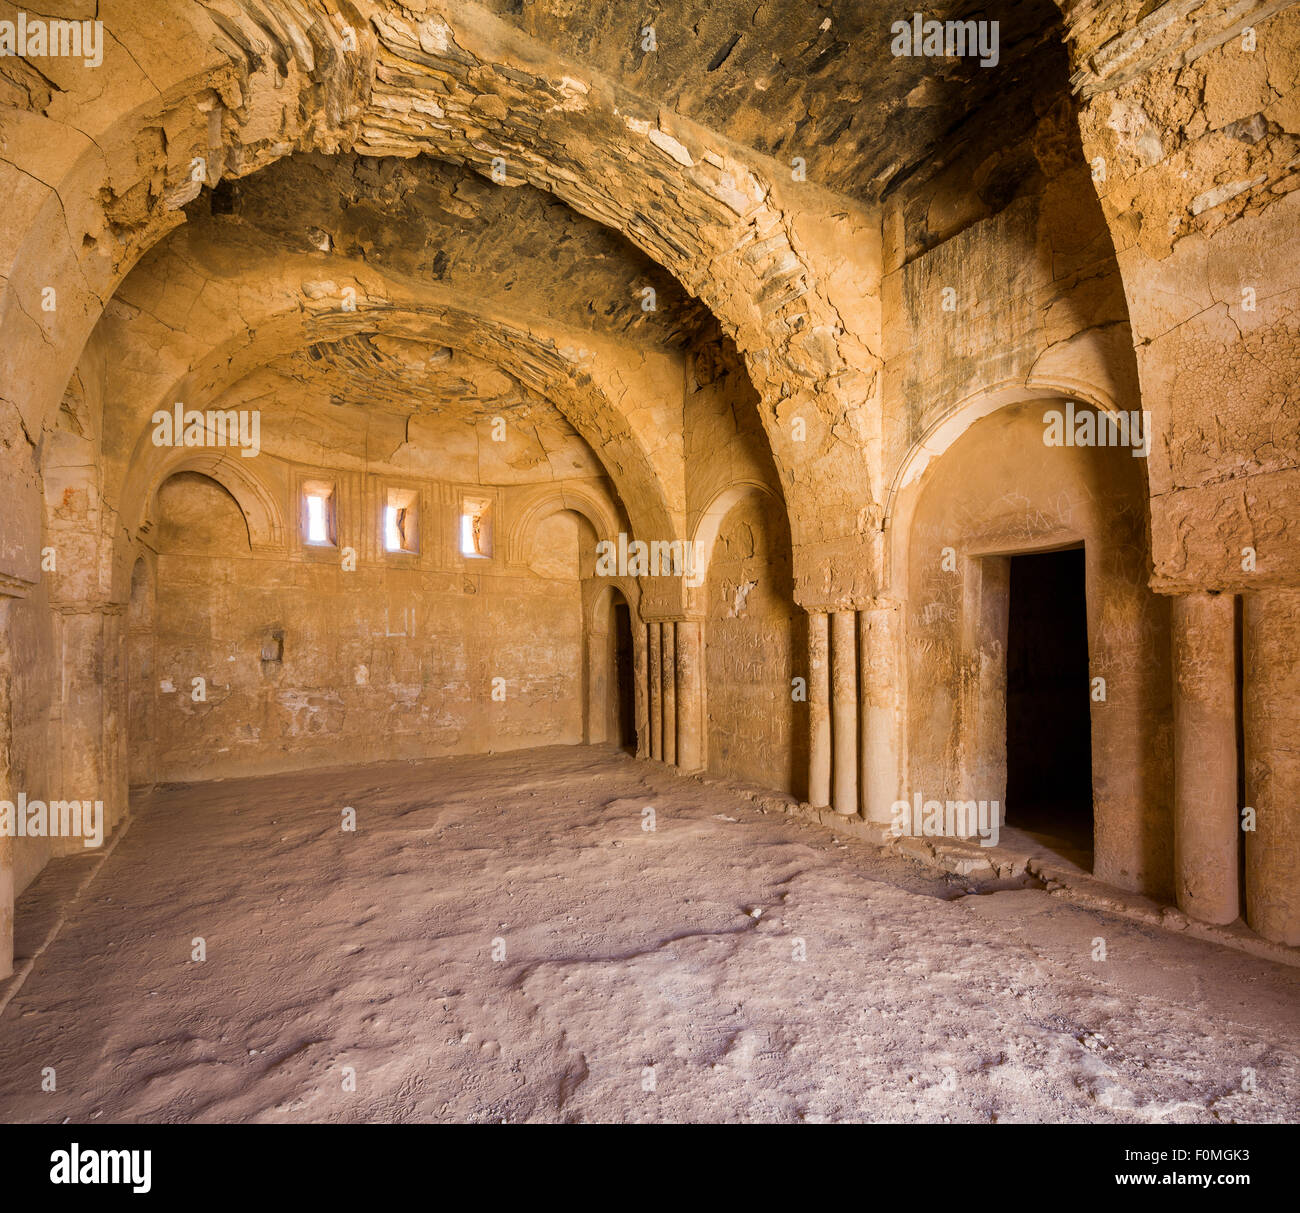 Habitación abovedada, principios del sitio islámico de Qasr Kharana, Jordania Foto de stock